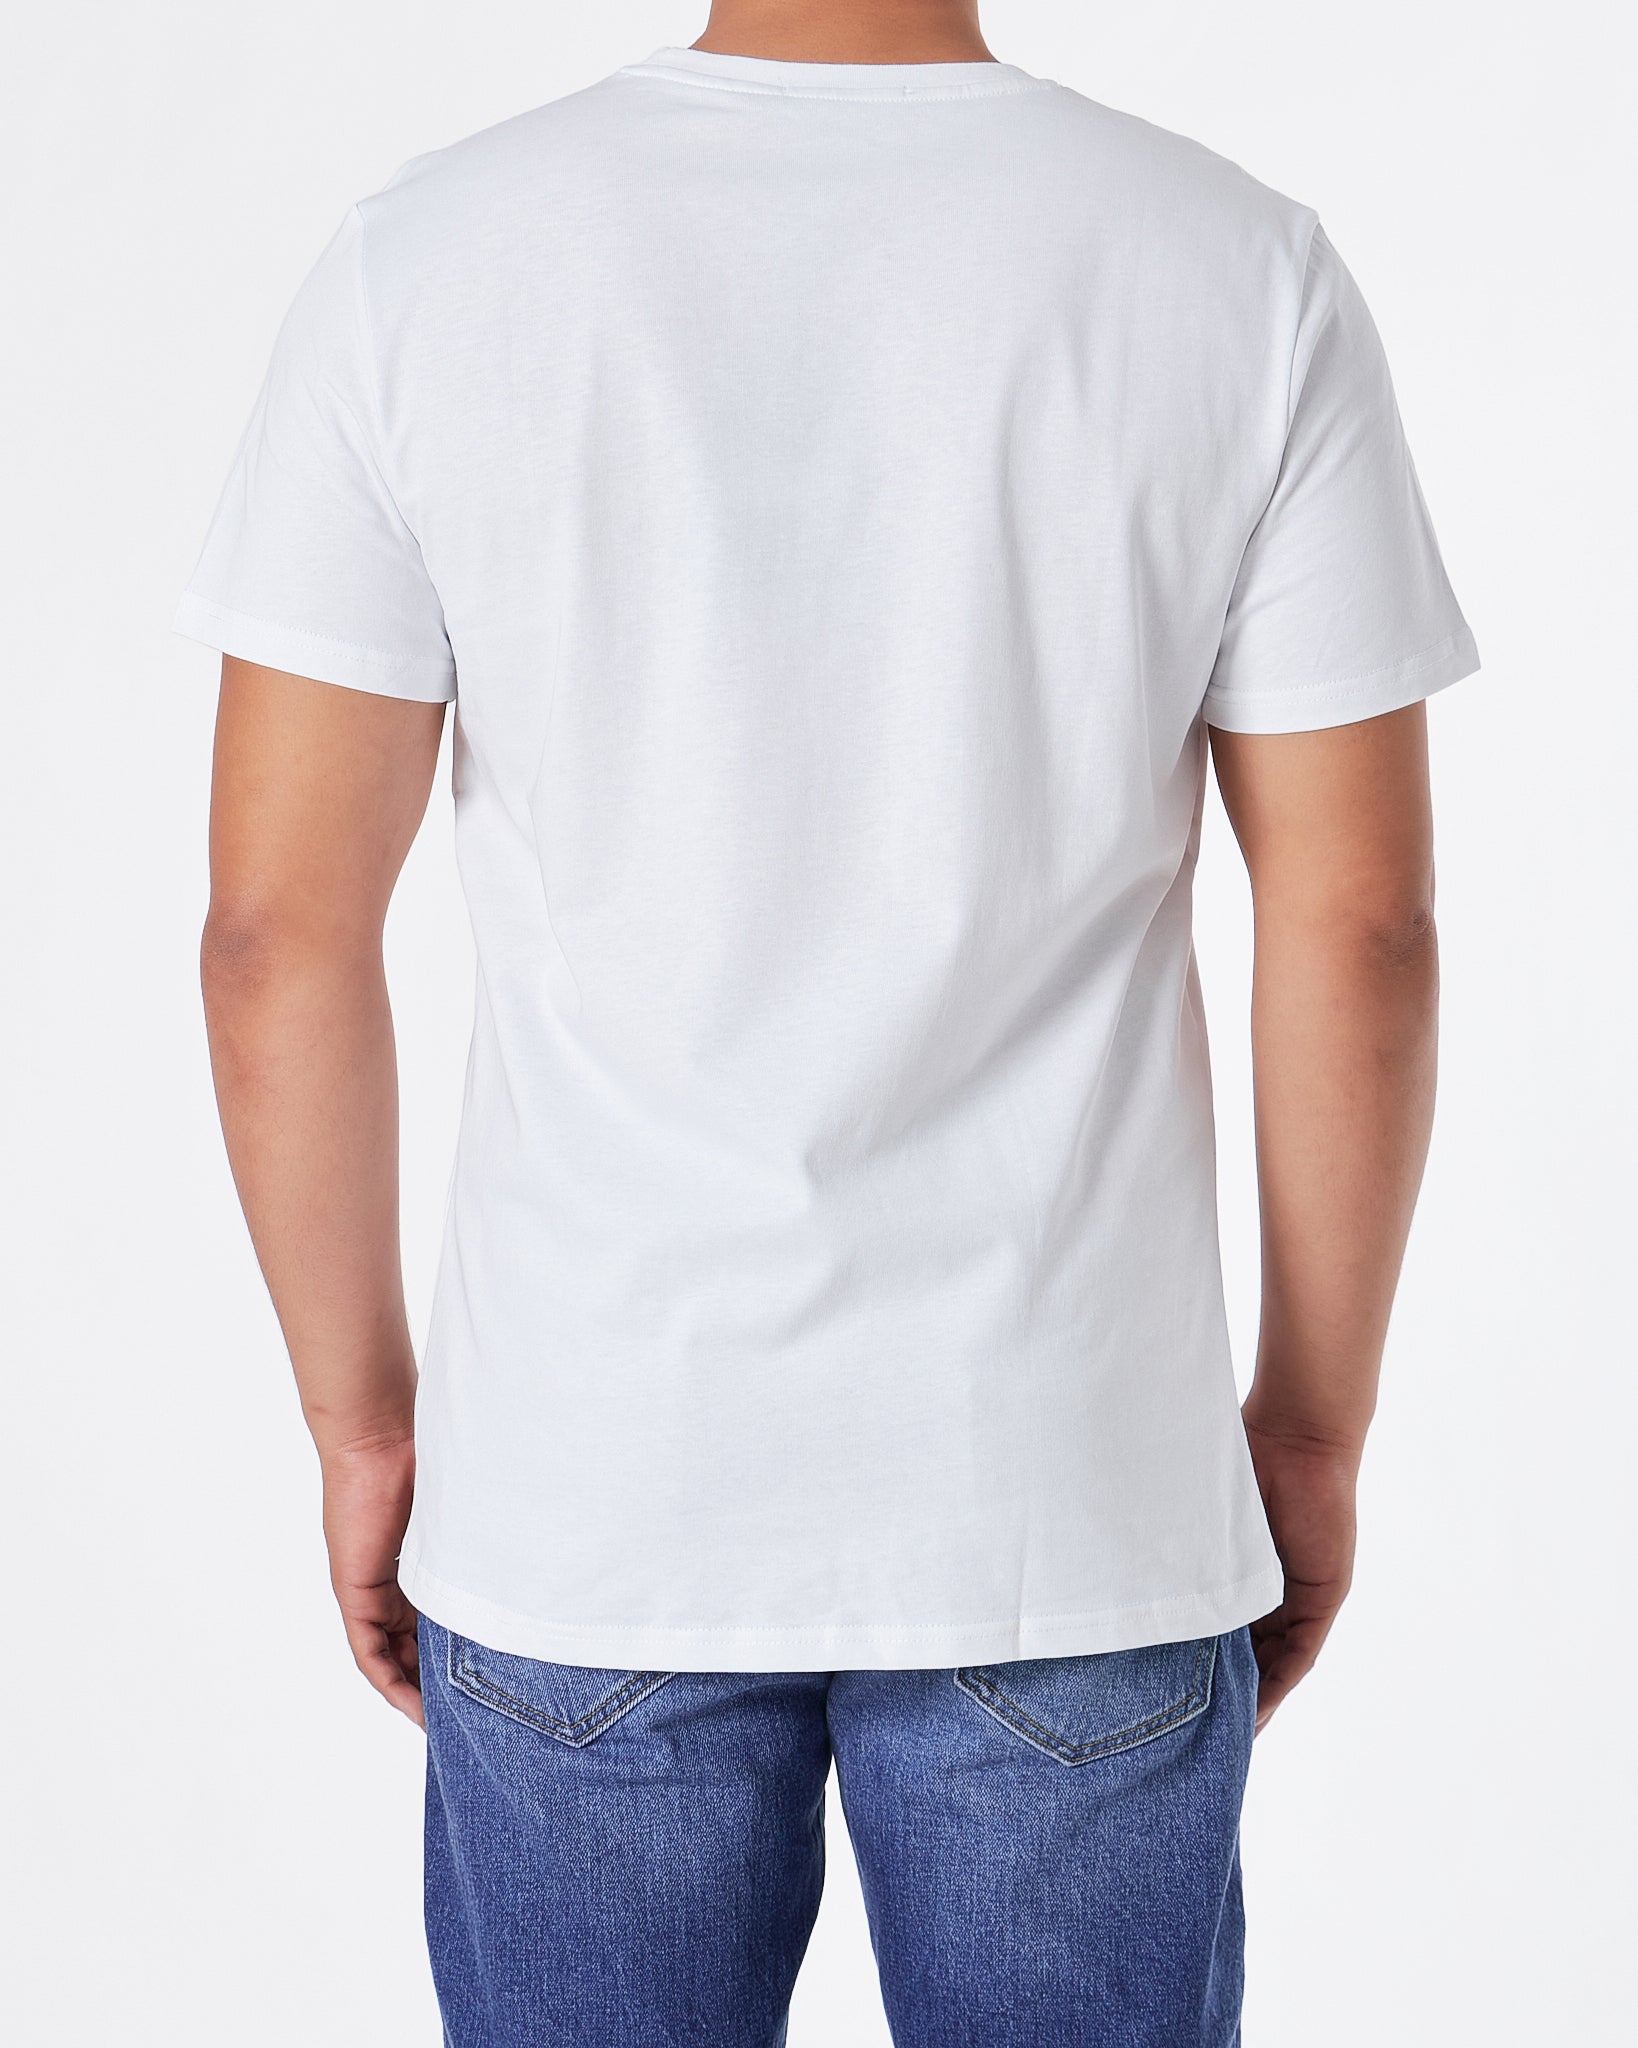 KAR Rhinestone Cartoon Men White T-Shirt 23.90